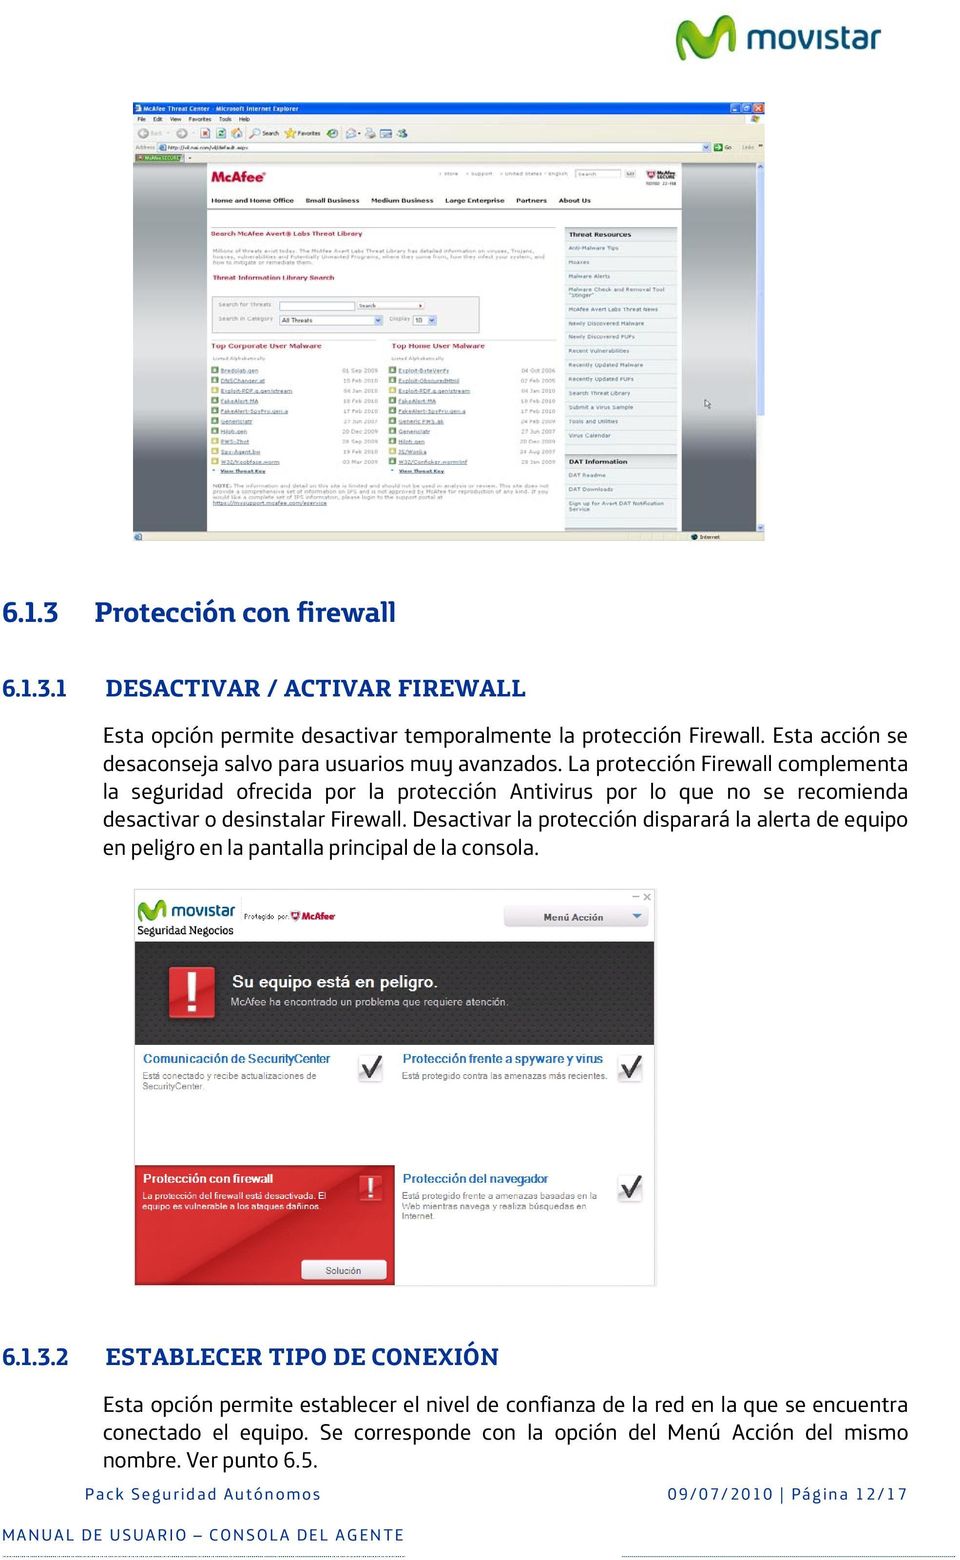 La protección Firewall complementa la seguridad ofrecida por la protección Antivirus por lo que no se recomienda desactivar o desinstalar Firewall.